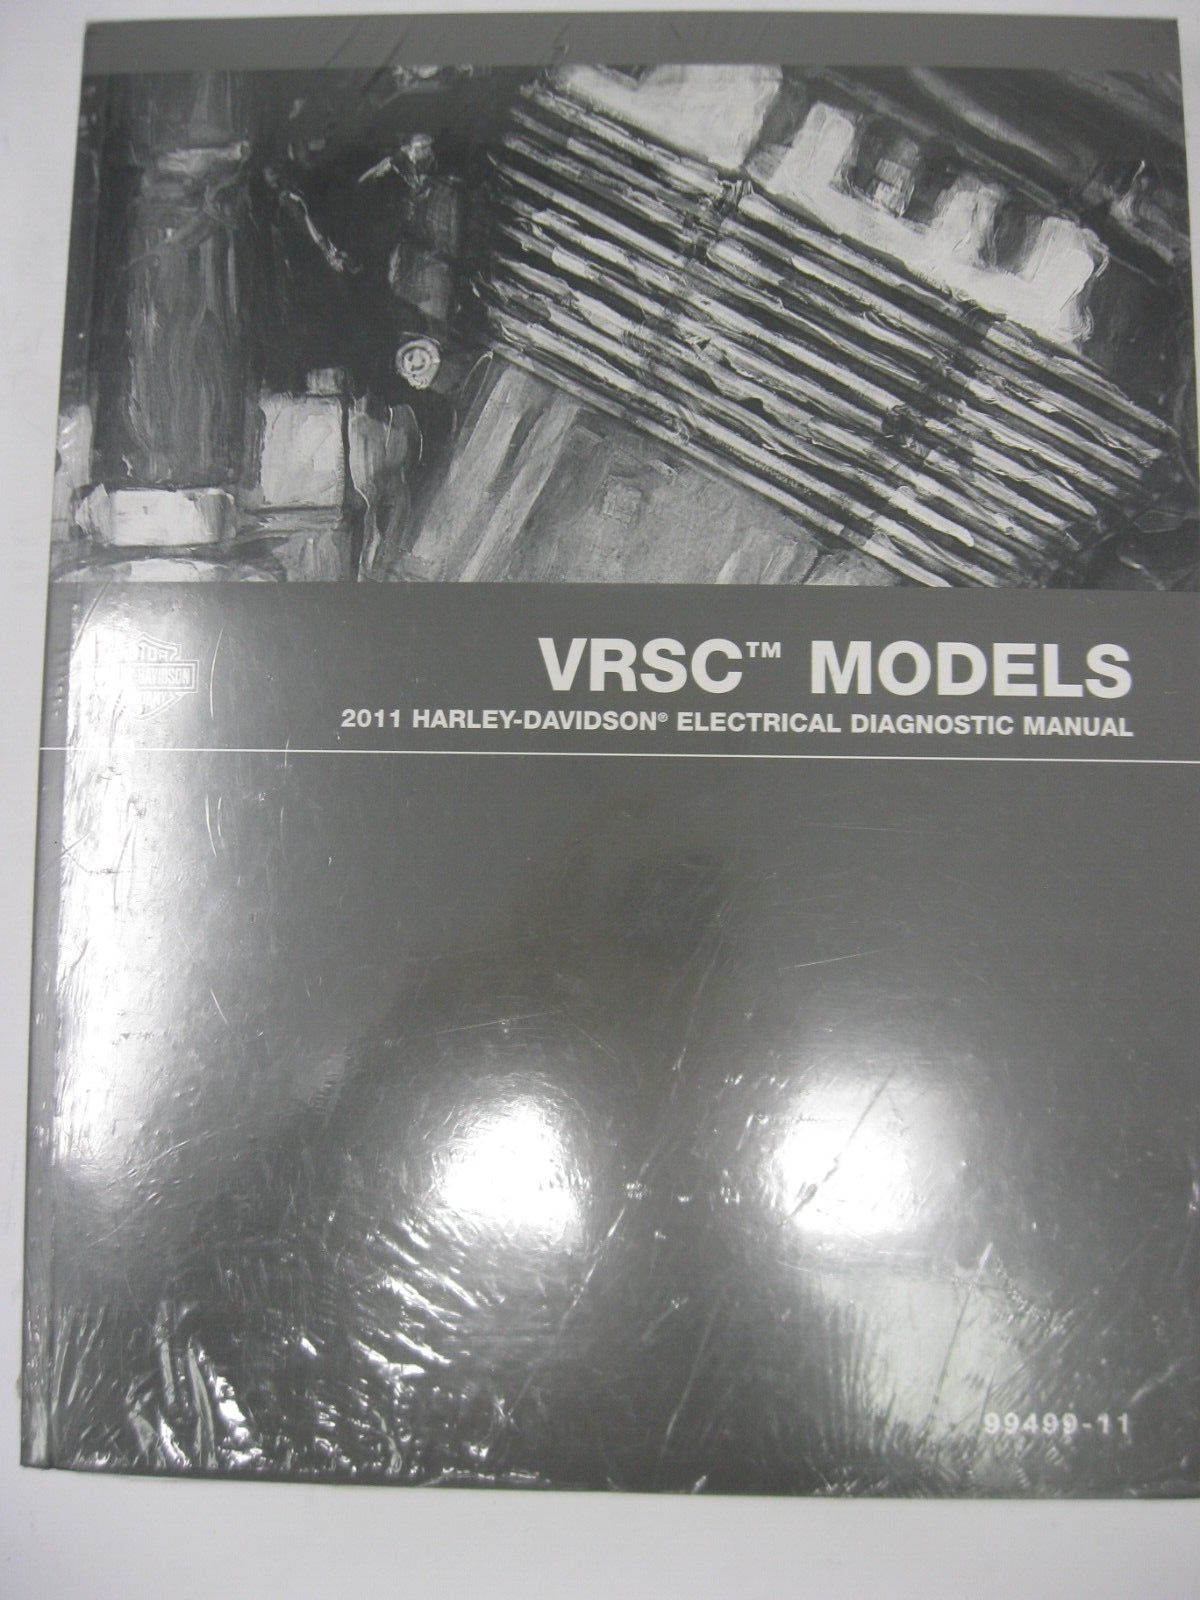 Harley-Davidson VRSC Models 2011 Electrical Diagnostic Manual 99499-11